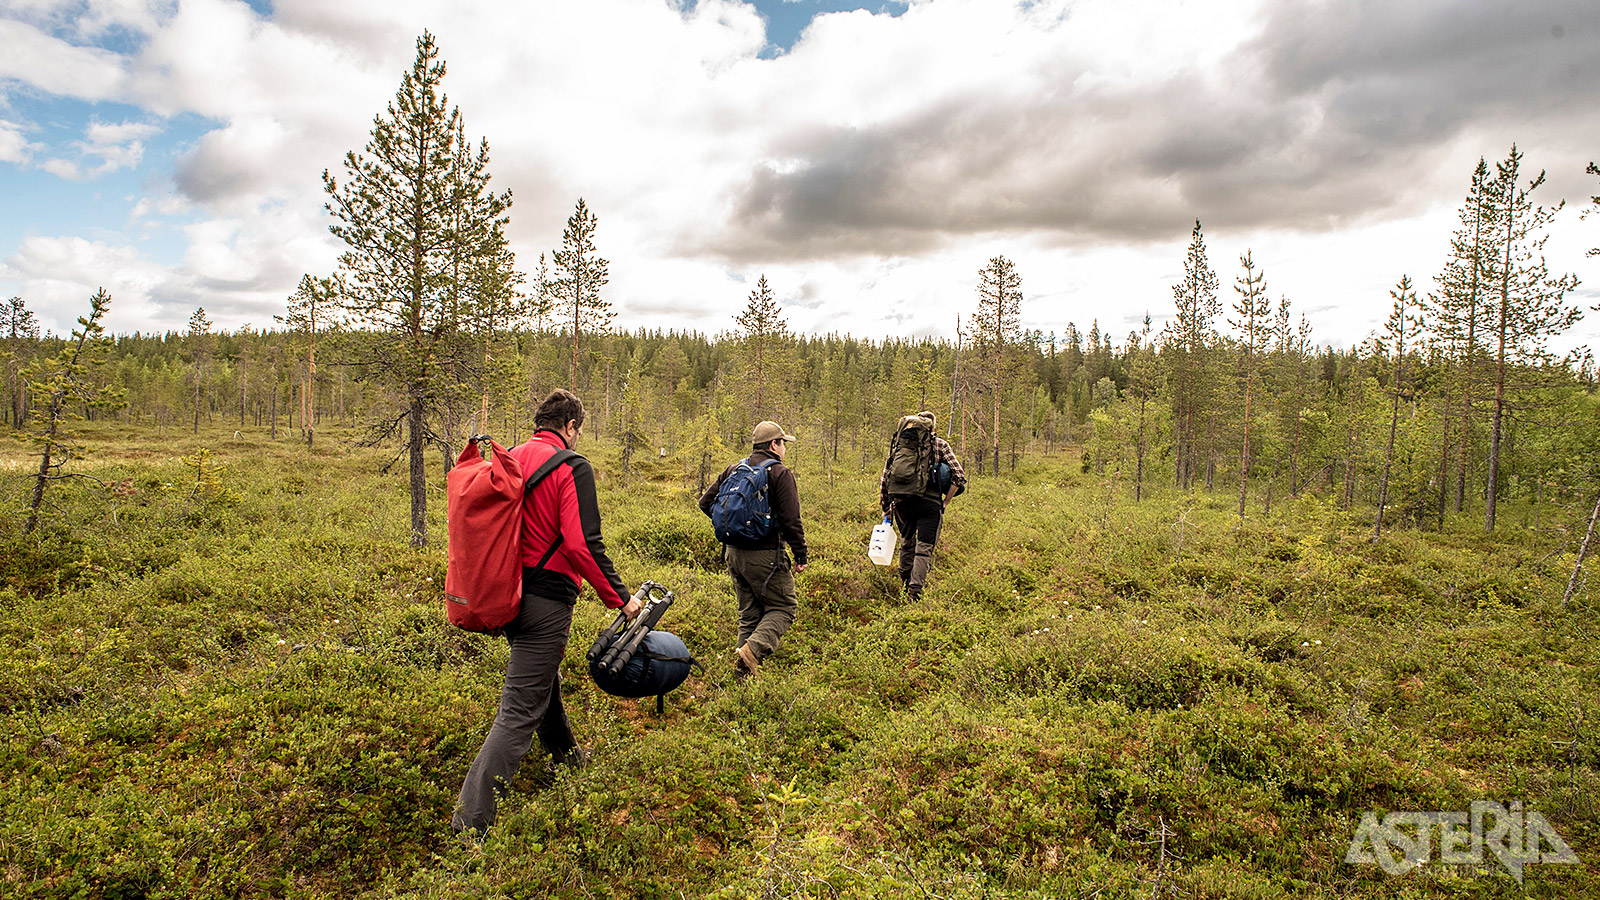 Dit programma draagt het label ‘Nature’s Best Sweden’, uitgereikt door de Zweedse Dienst voor Ecotoerisme